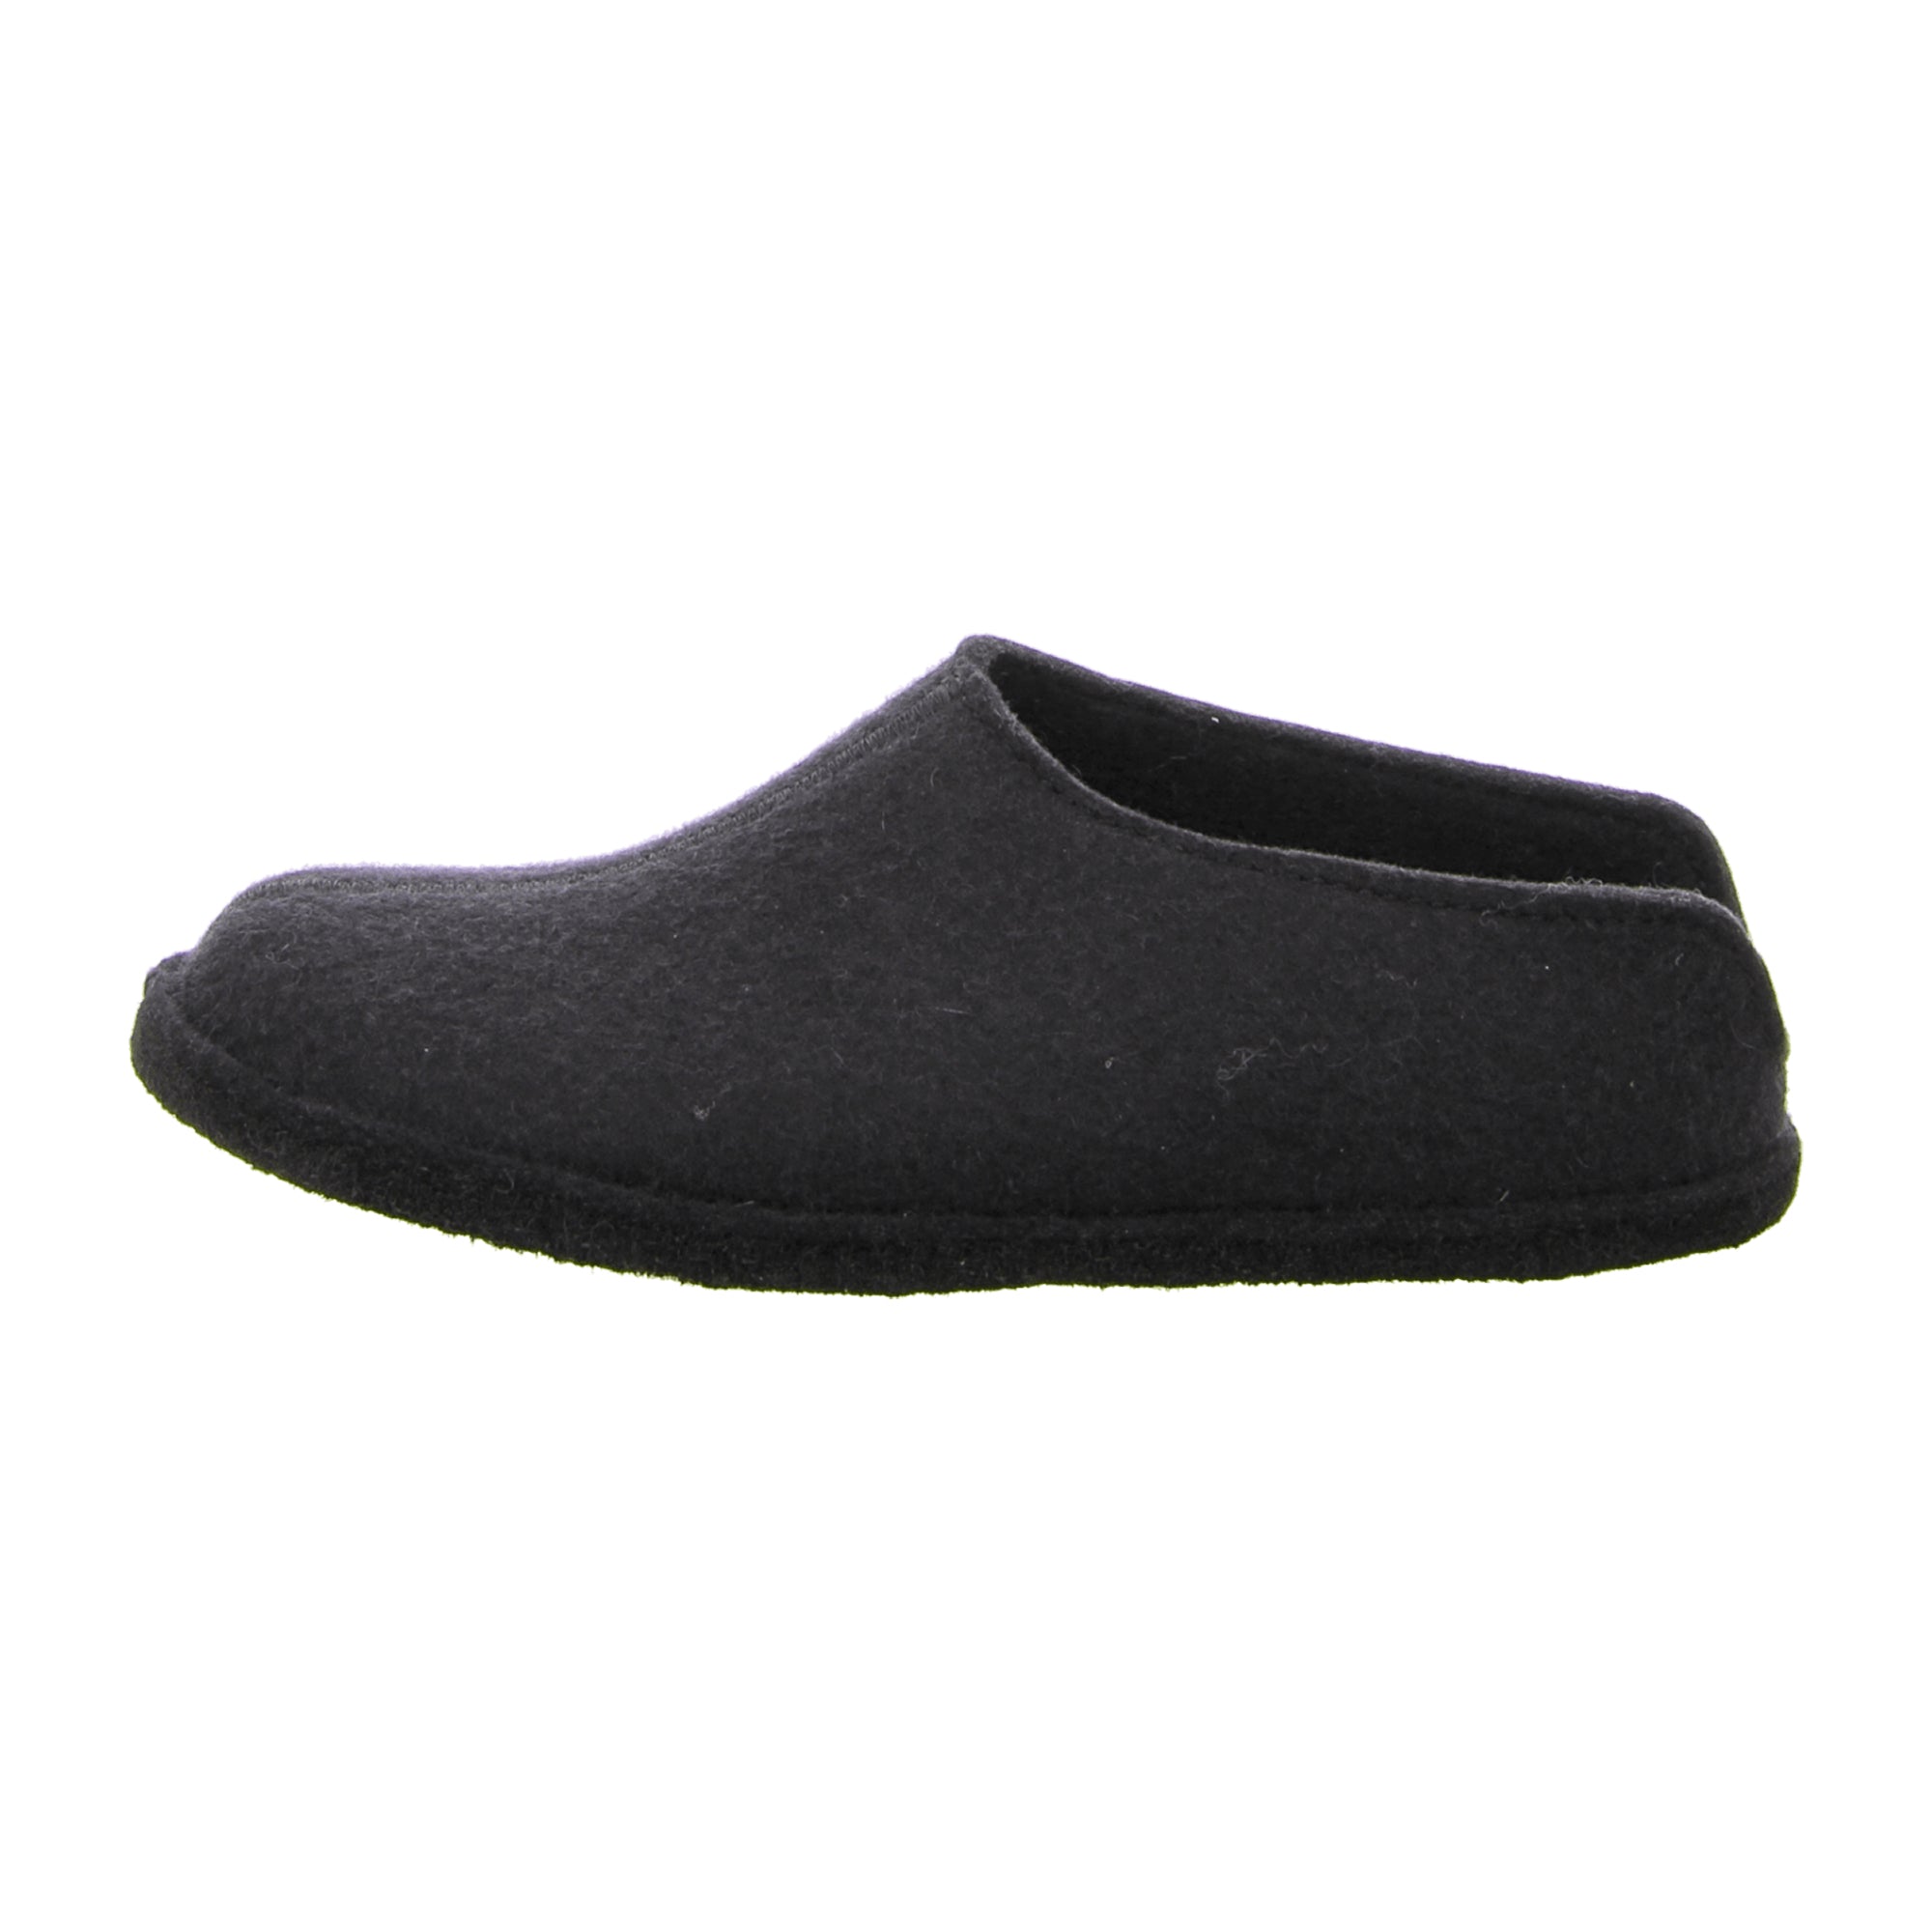 Haflinger Flair Smily Men's Slippers - Black, Comfortable & Stylish